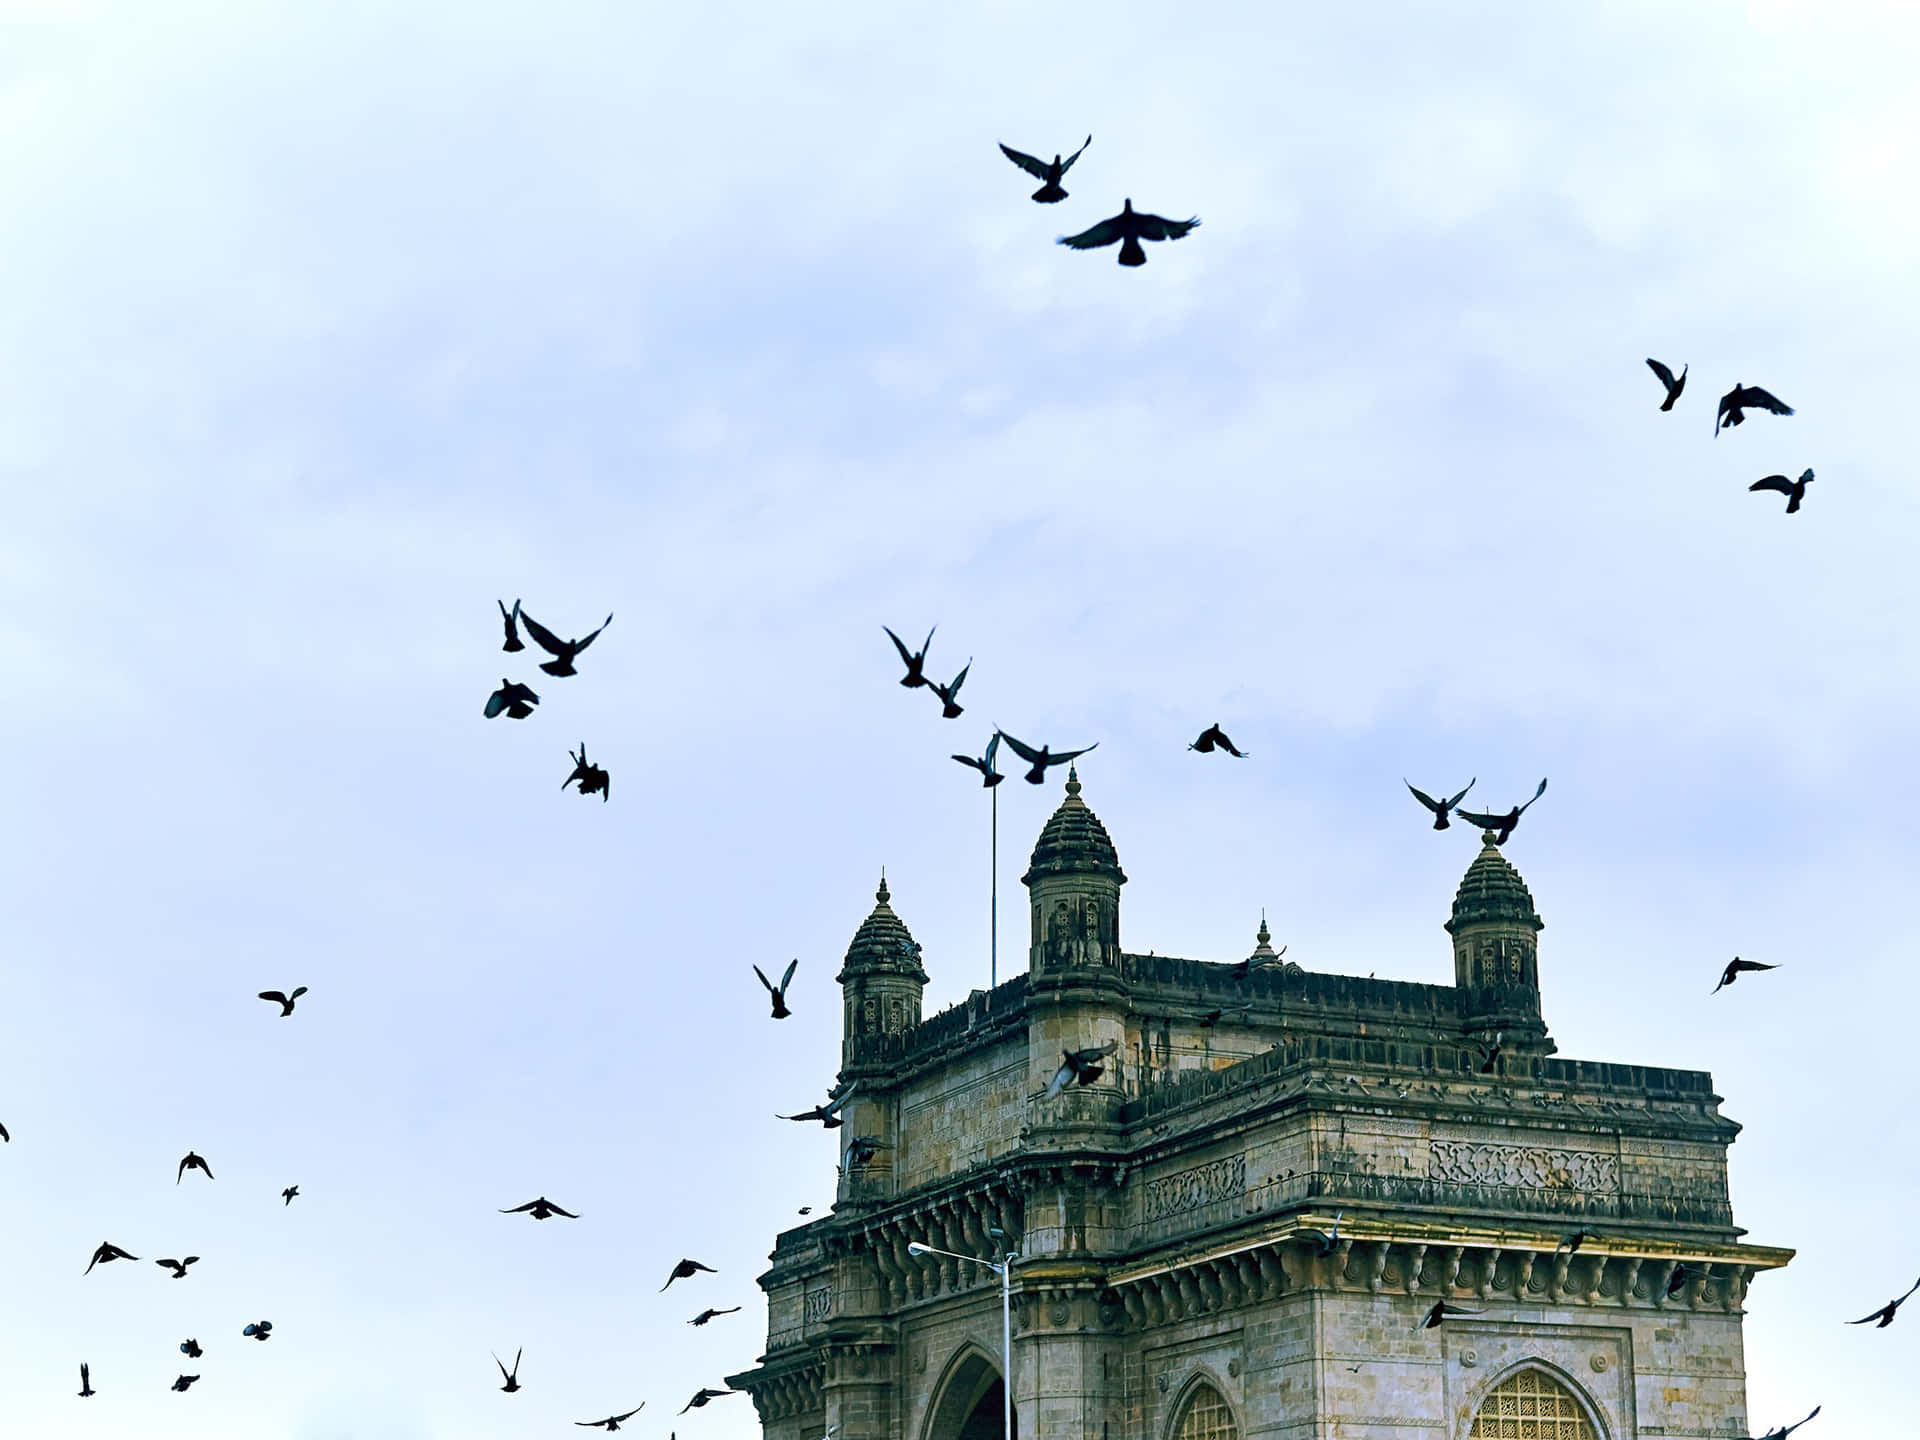 Gatewaynach Indien Mit Überfliegenden Vögeln Wallpaper